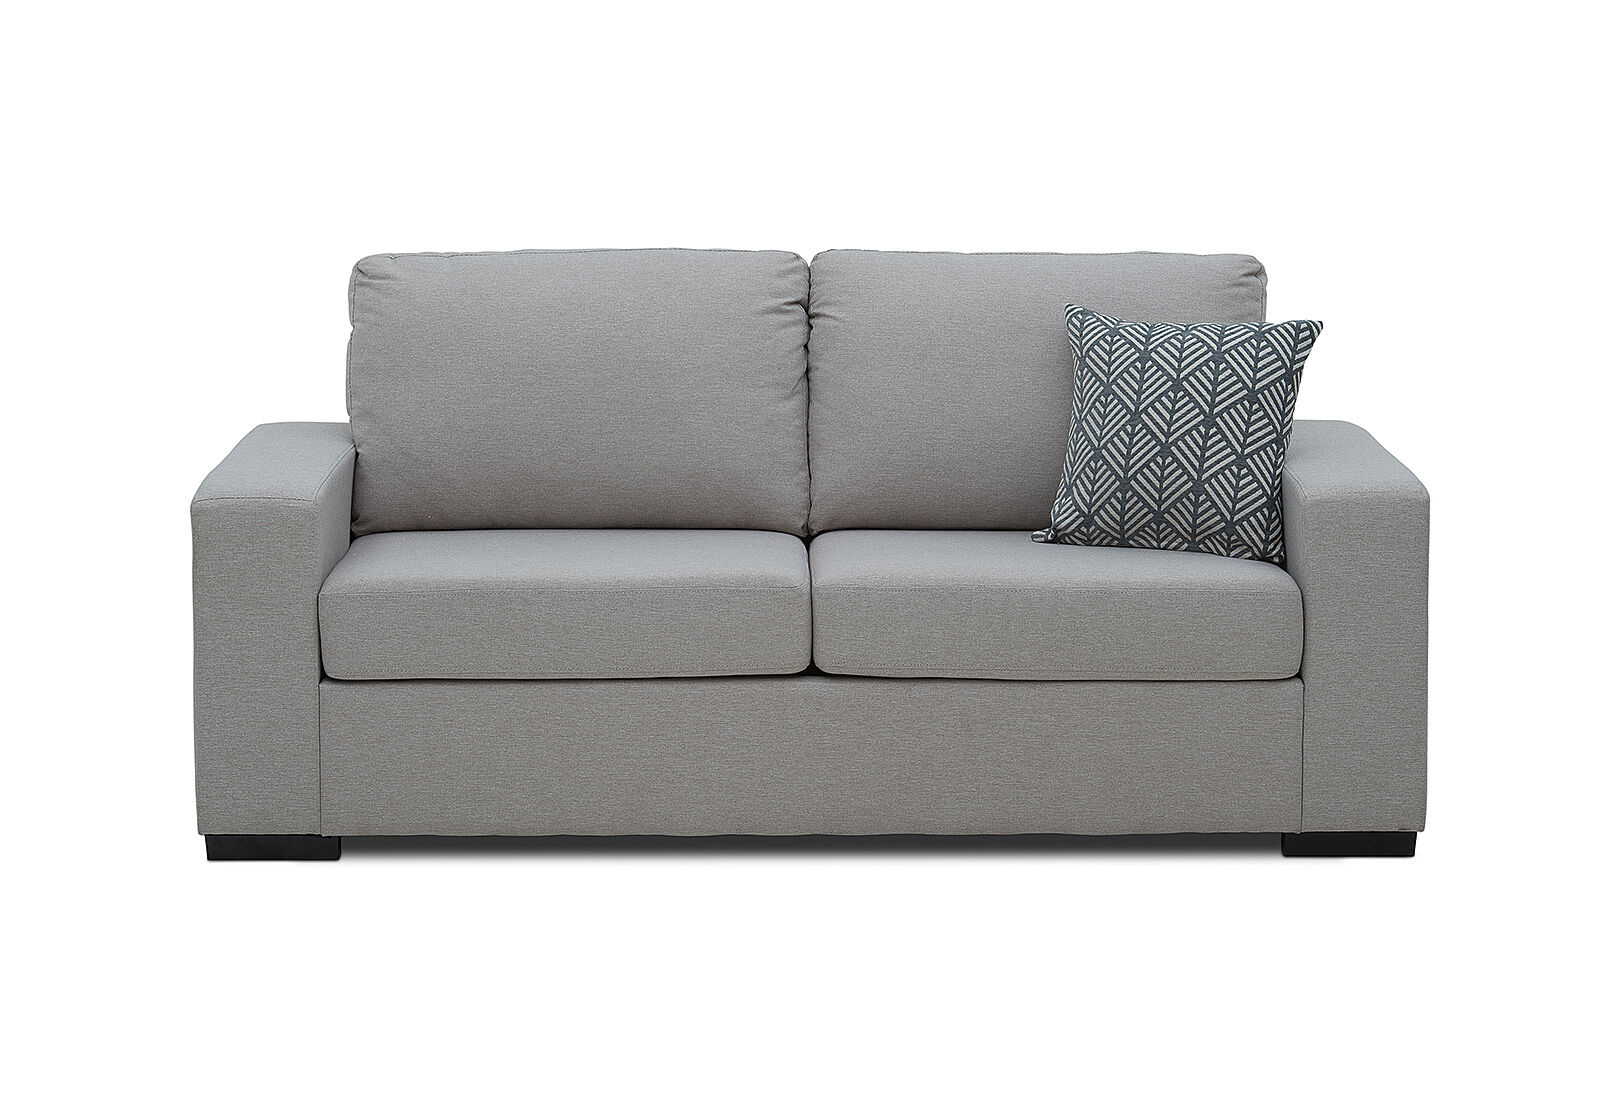 Nixon Fabric 3 Seater Sofa Bed